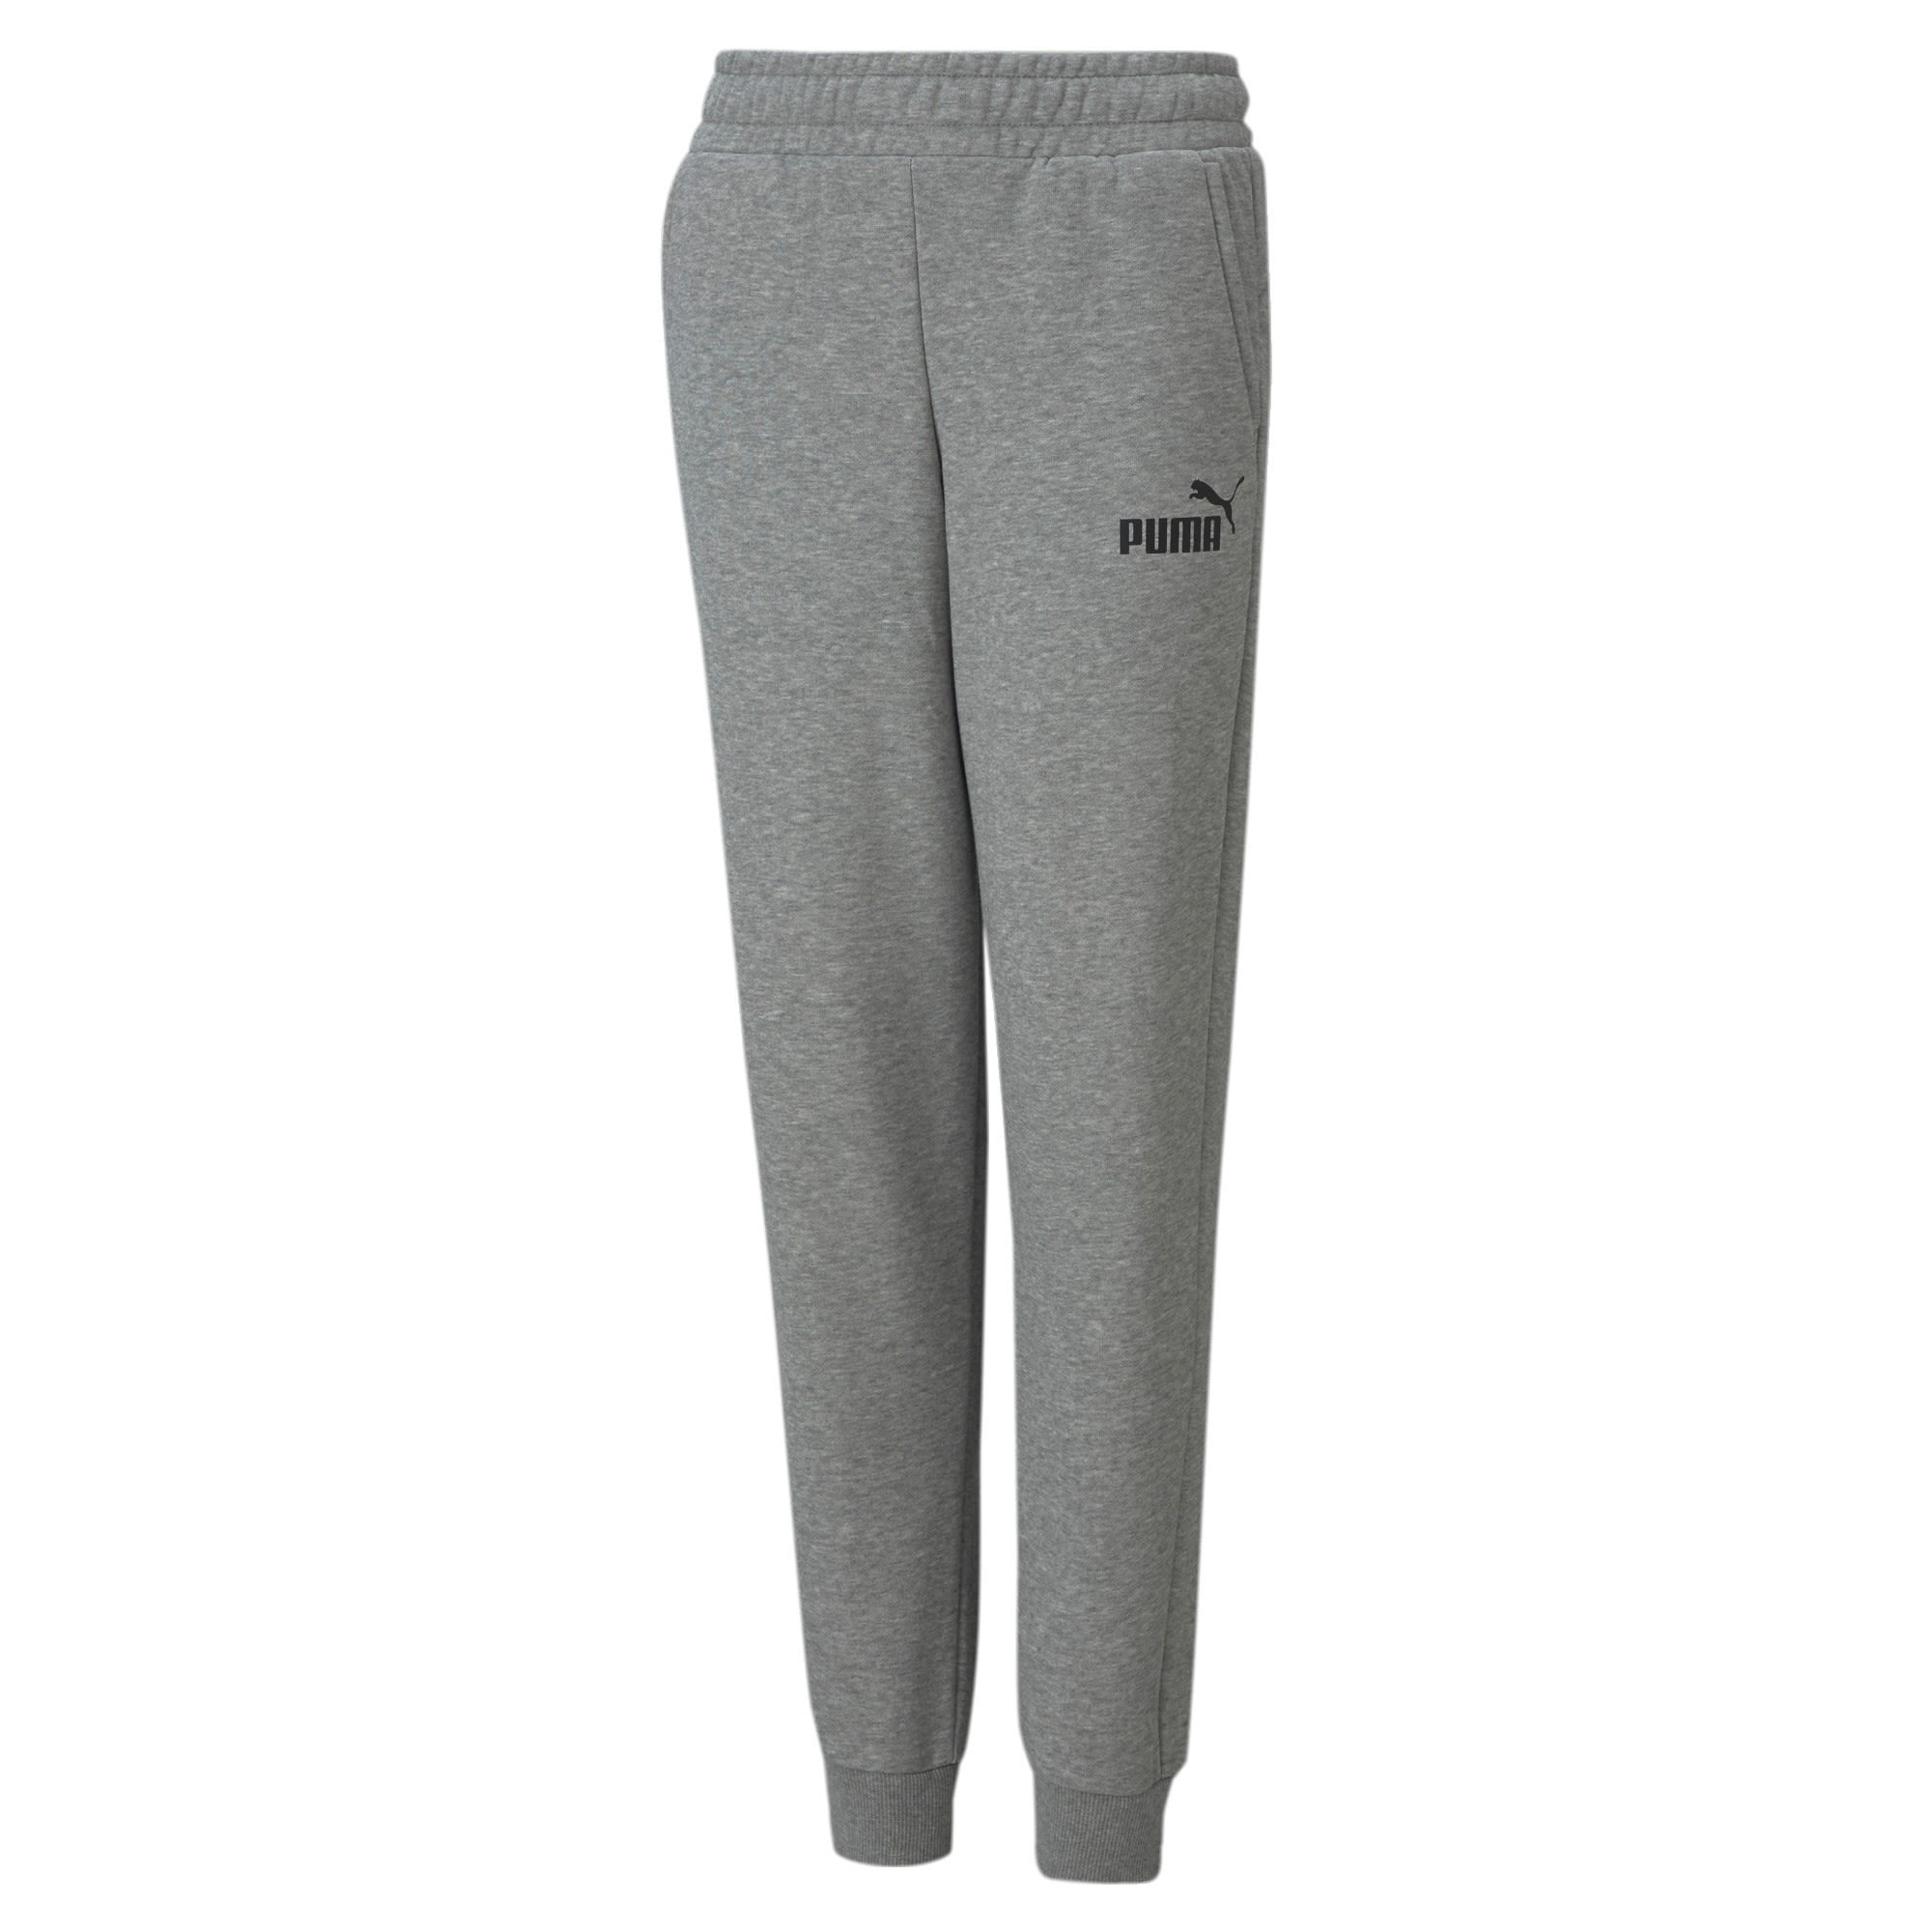 Puma Boys Essentials Logo Sweat Pants Grau- Male Softshellhosen- Grsse 104 - Farbe Medium Gray Heather unter Puma